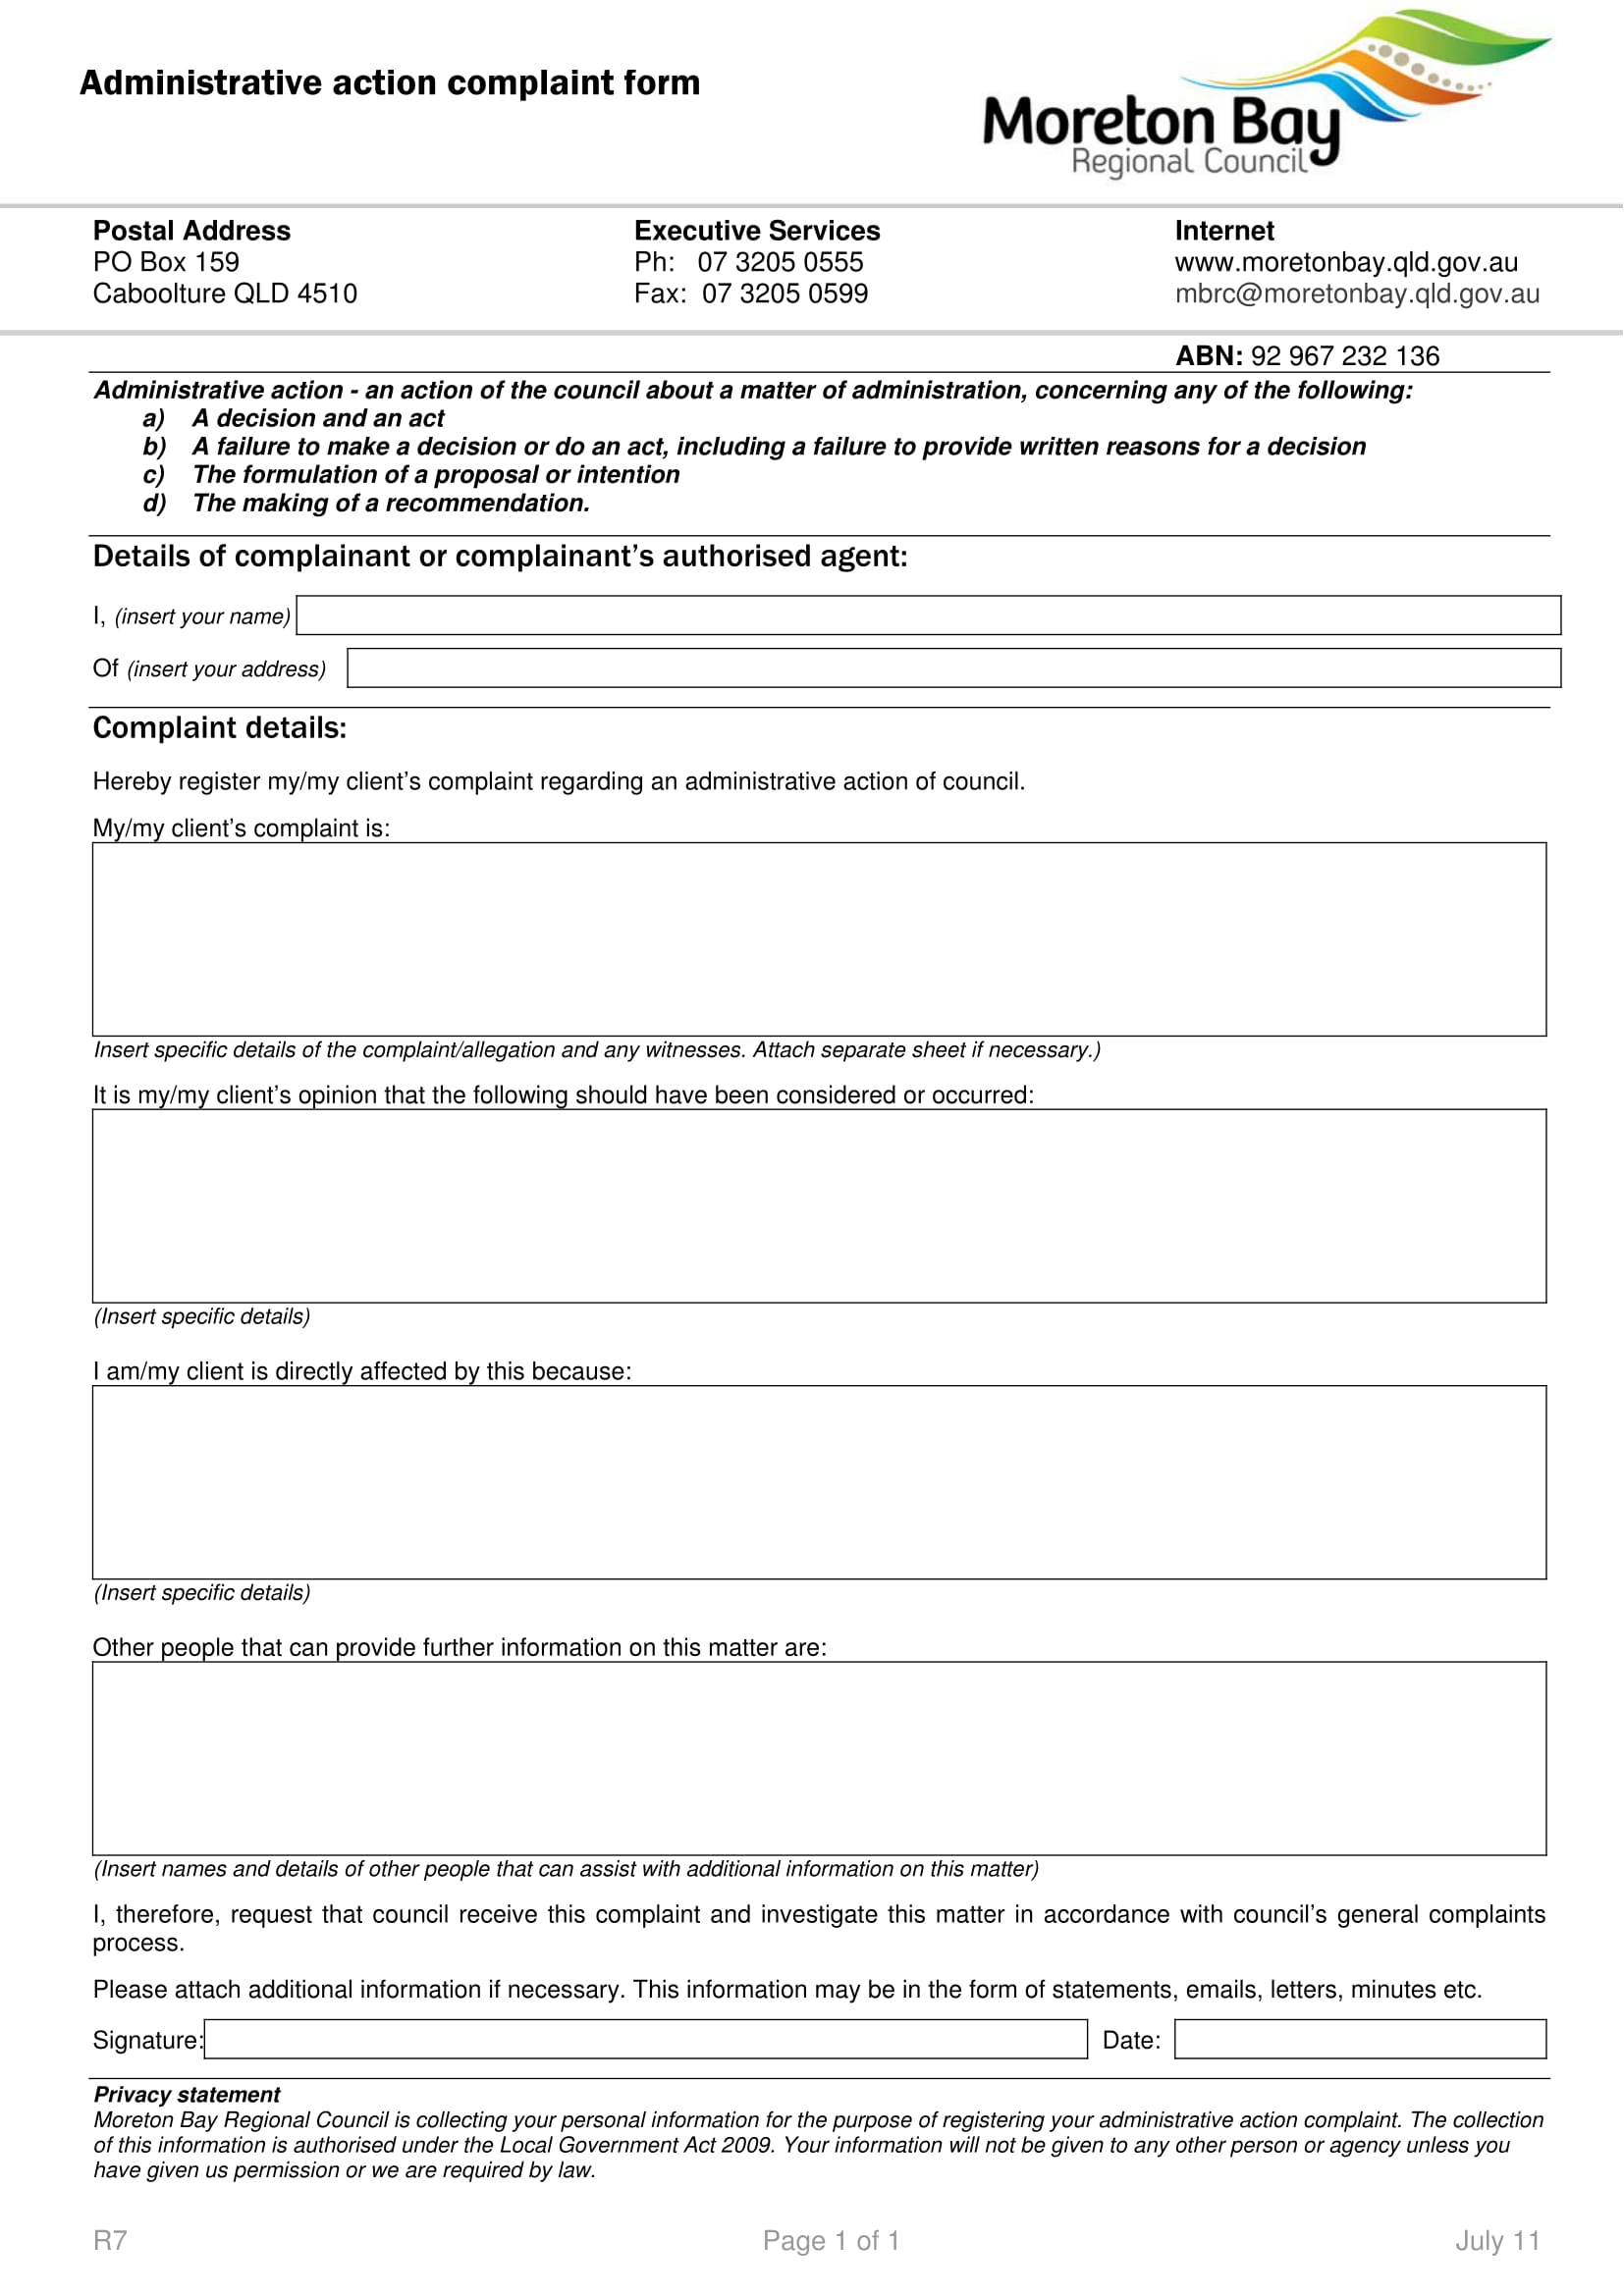 administrative action complaint form 1